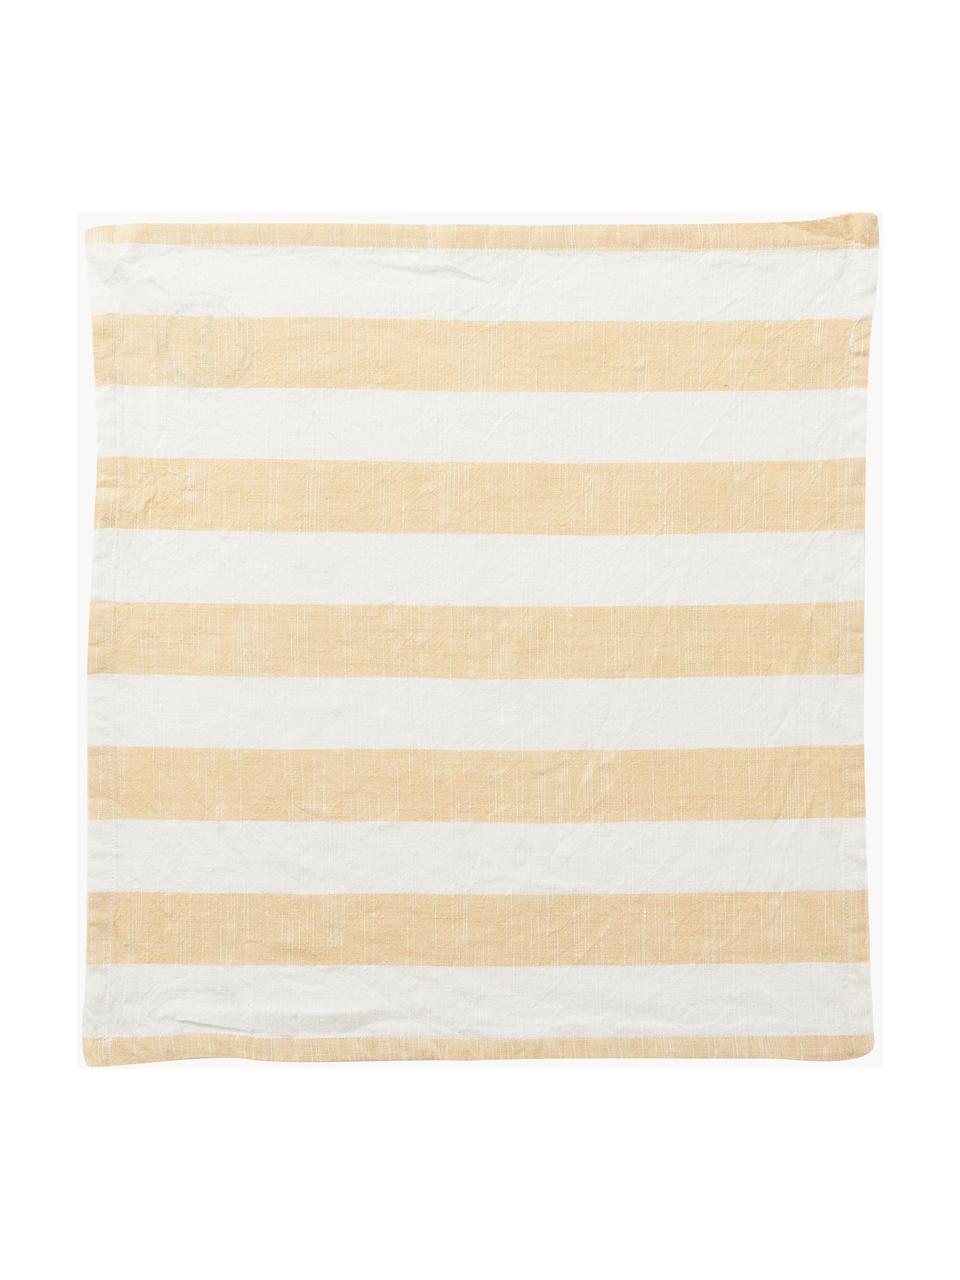 Stoffservietten Strip, 2 Stück, 100 % Baumwolle, Gelb, Weiß, B 45 x L 45 cm